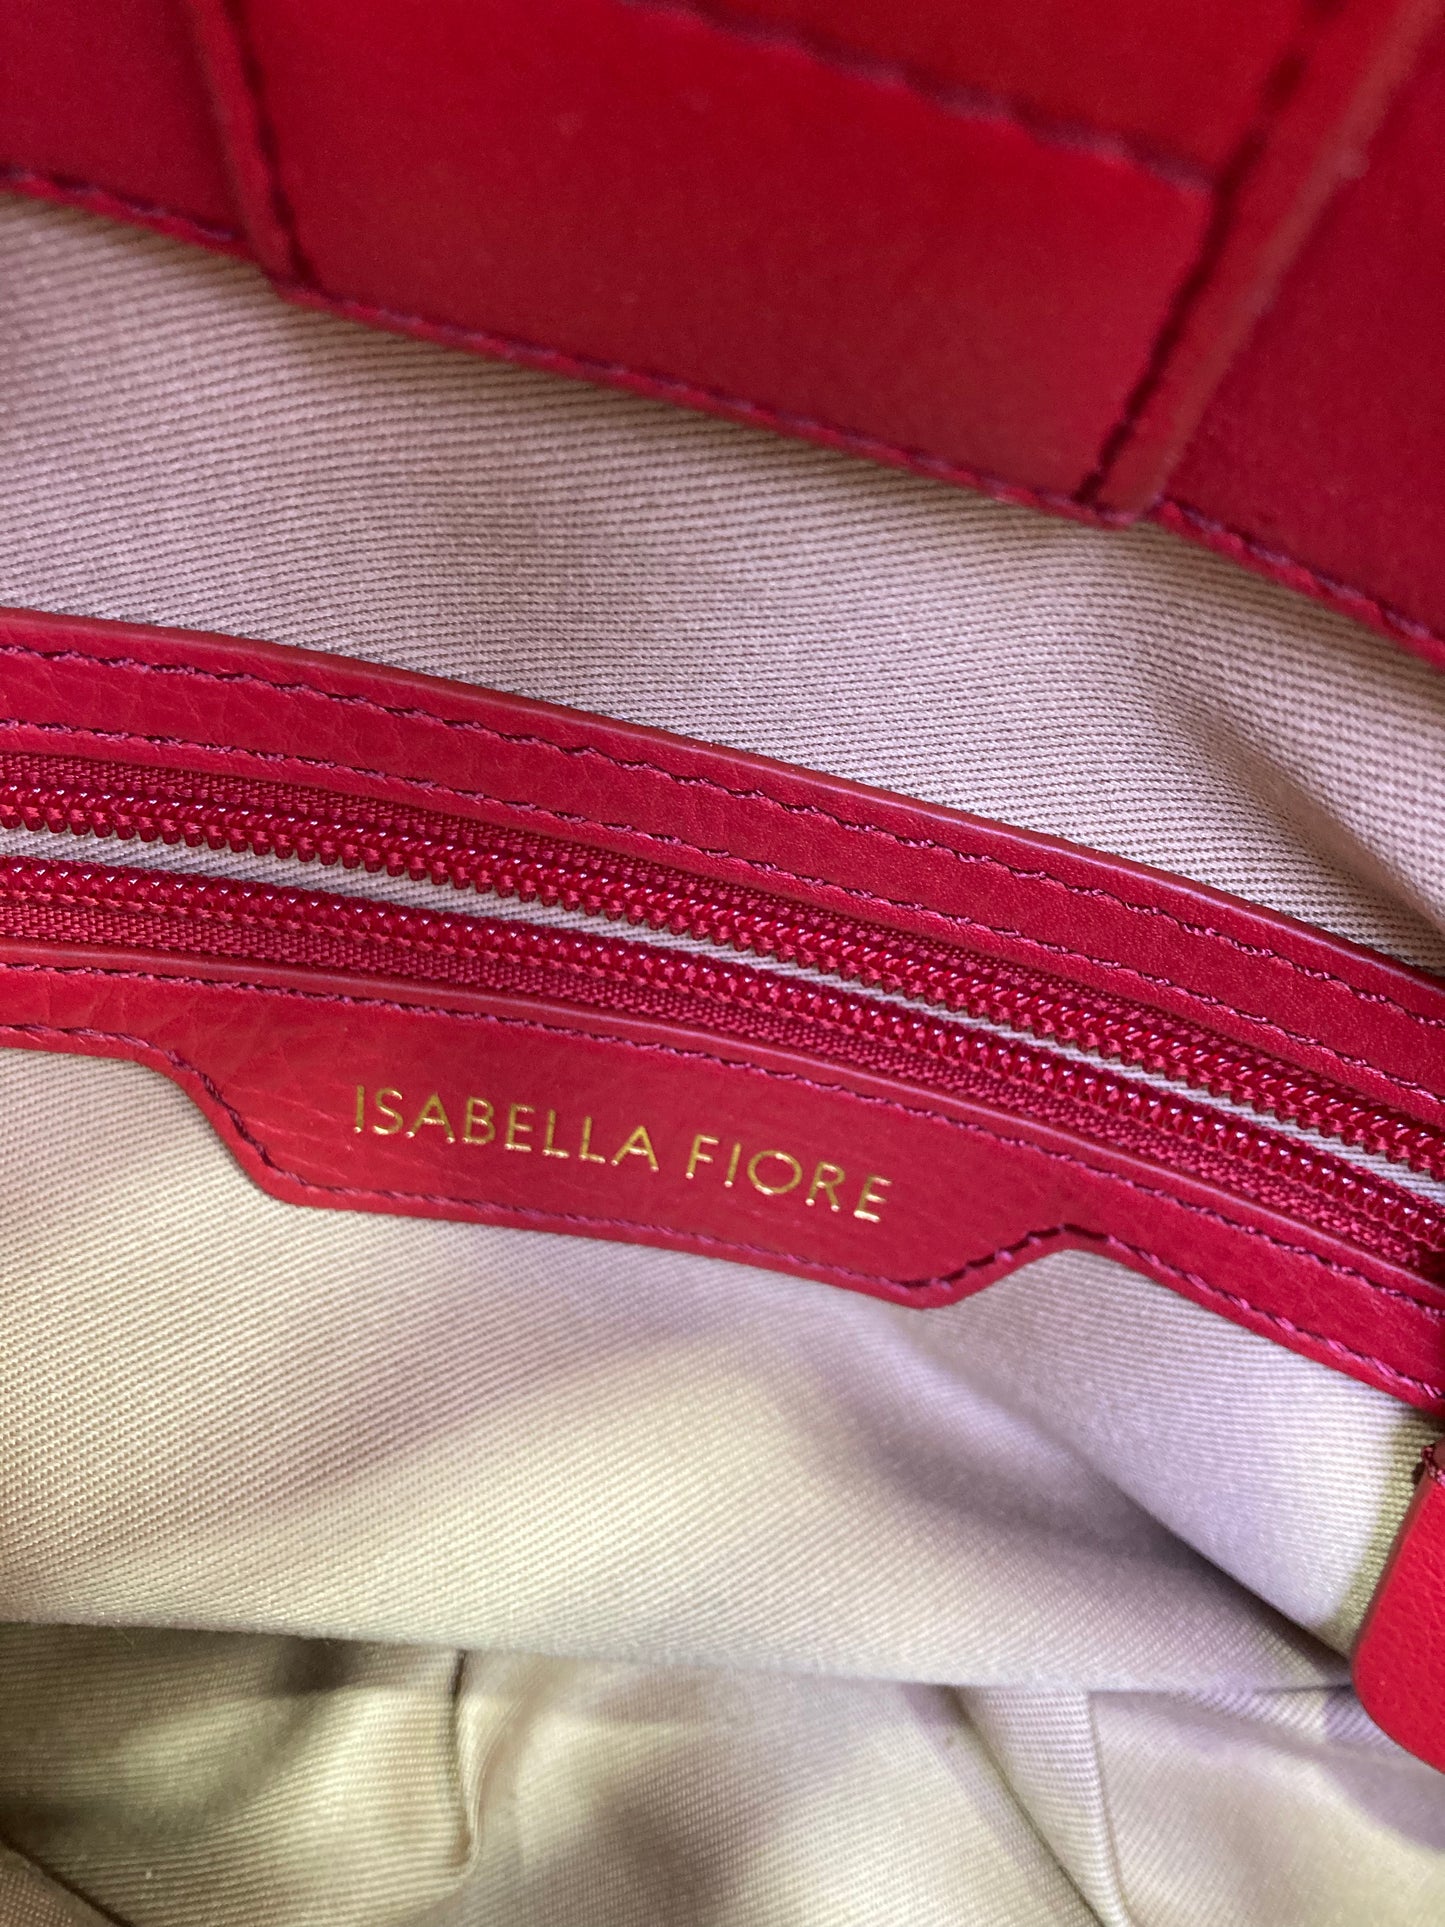 Foote Designer Handbag leather red color